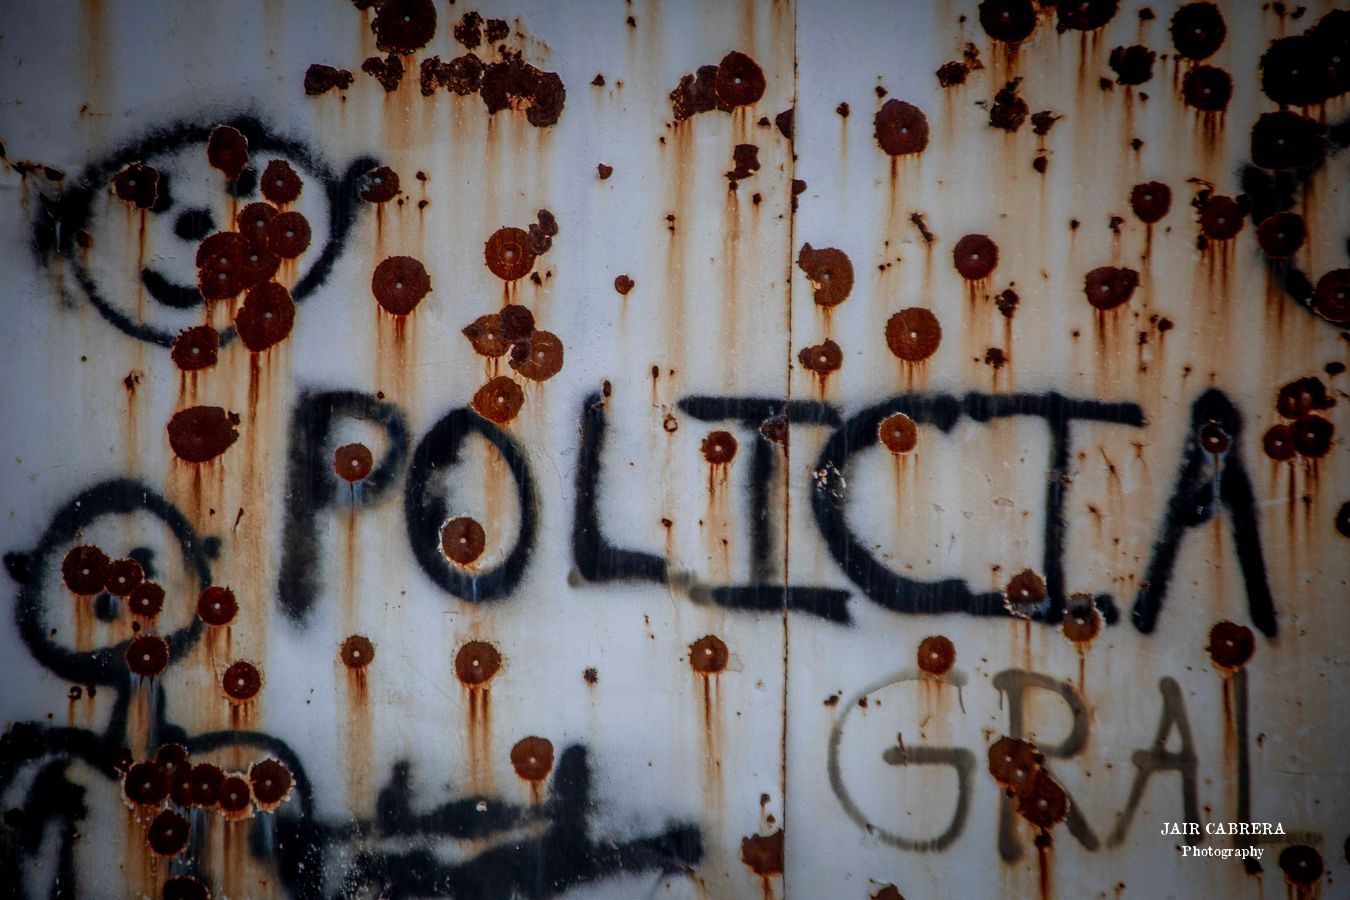 Marcas de balas a causa de enfrentamientos entre grupos del crimen organizado y policías comunitarios en la región de la Sierra de Guerrero. Tlacotepec, Guerrero. Mayo 2022